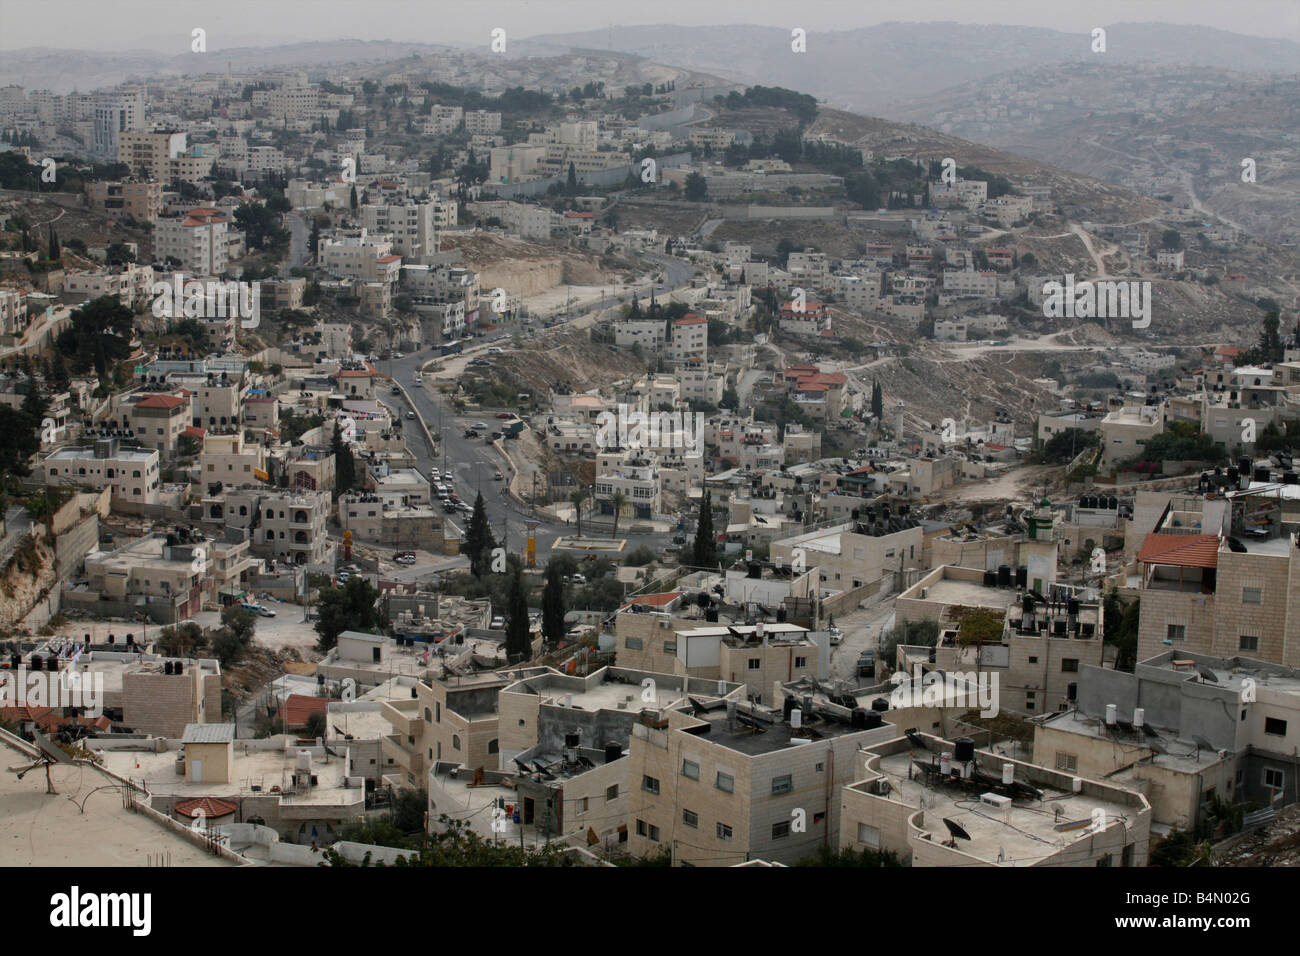 Israel baut eine Mauer um die West Bank Gebiete Sperrung des Zugangs für die Palästinenser, die von ihm eingesperrt fühlen Stockfoto